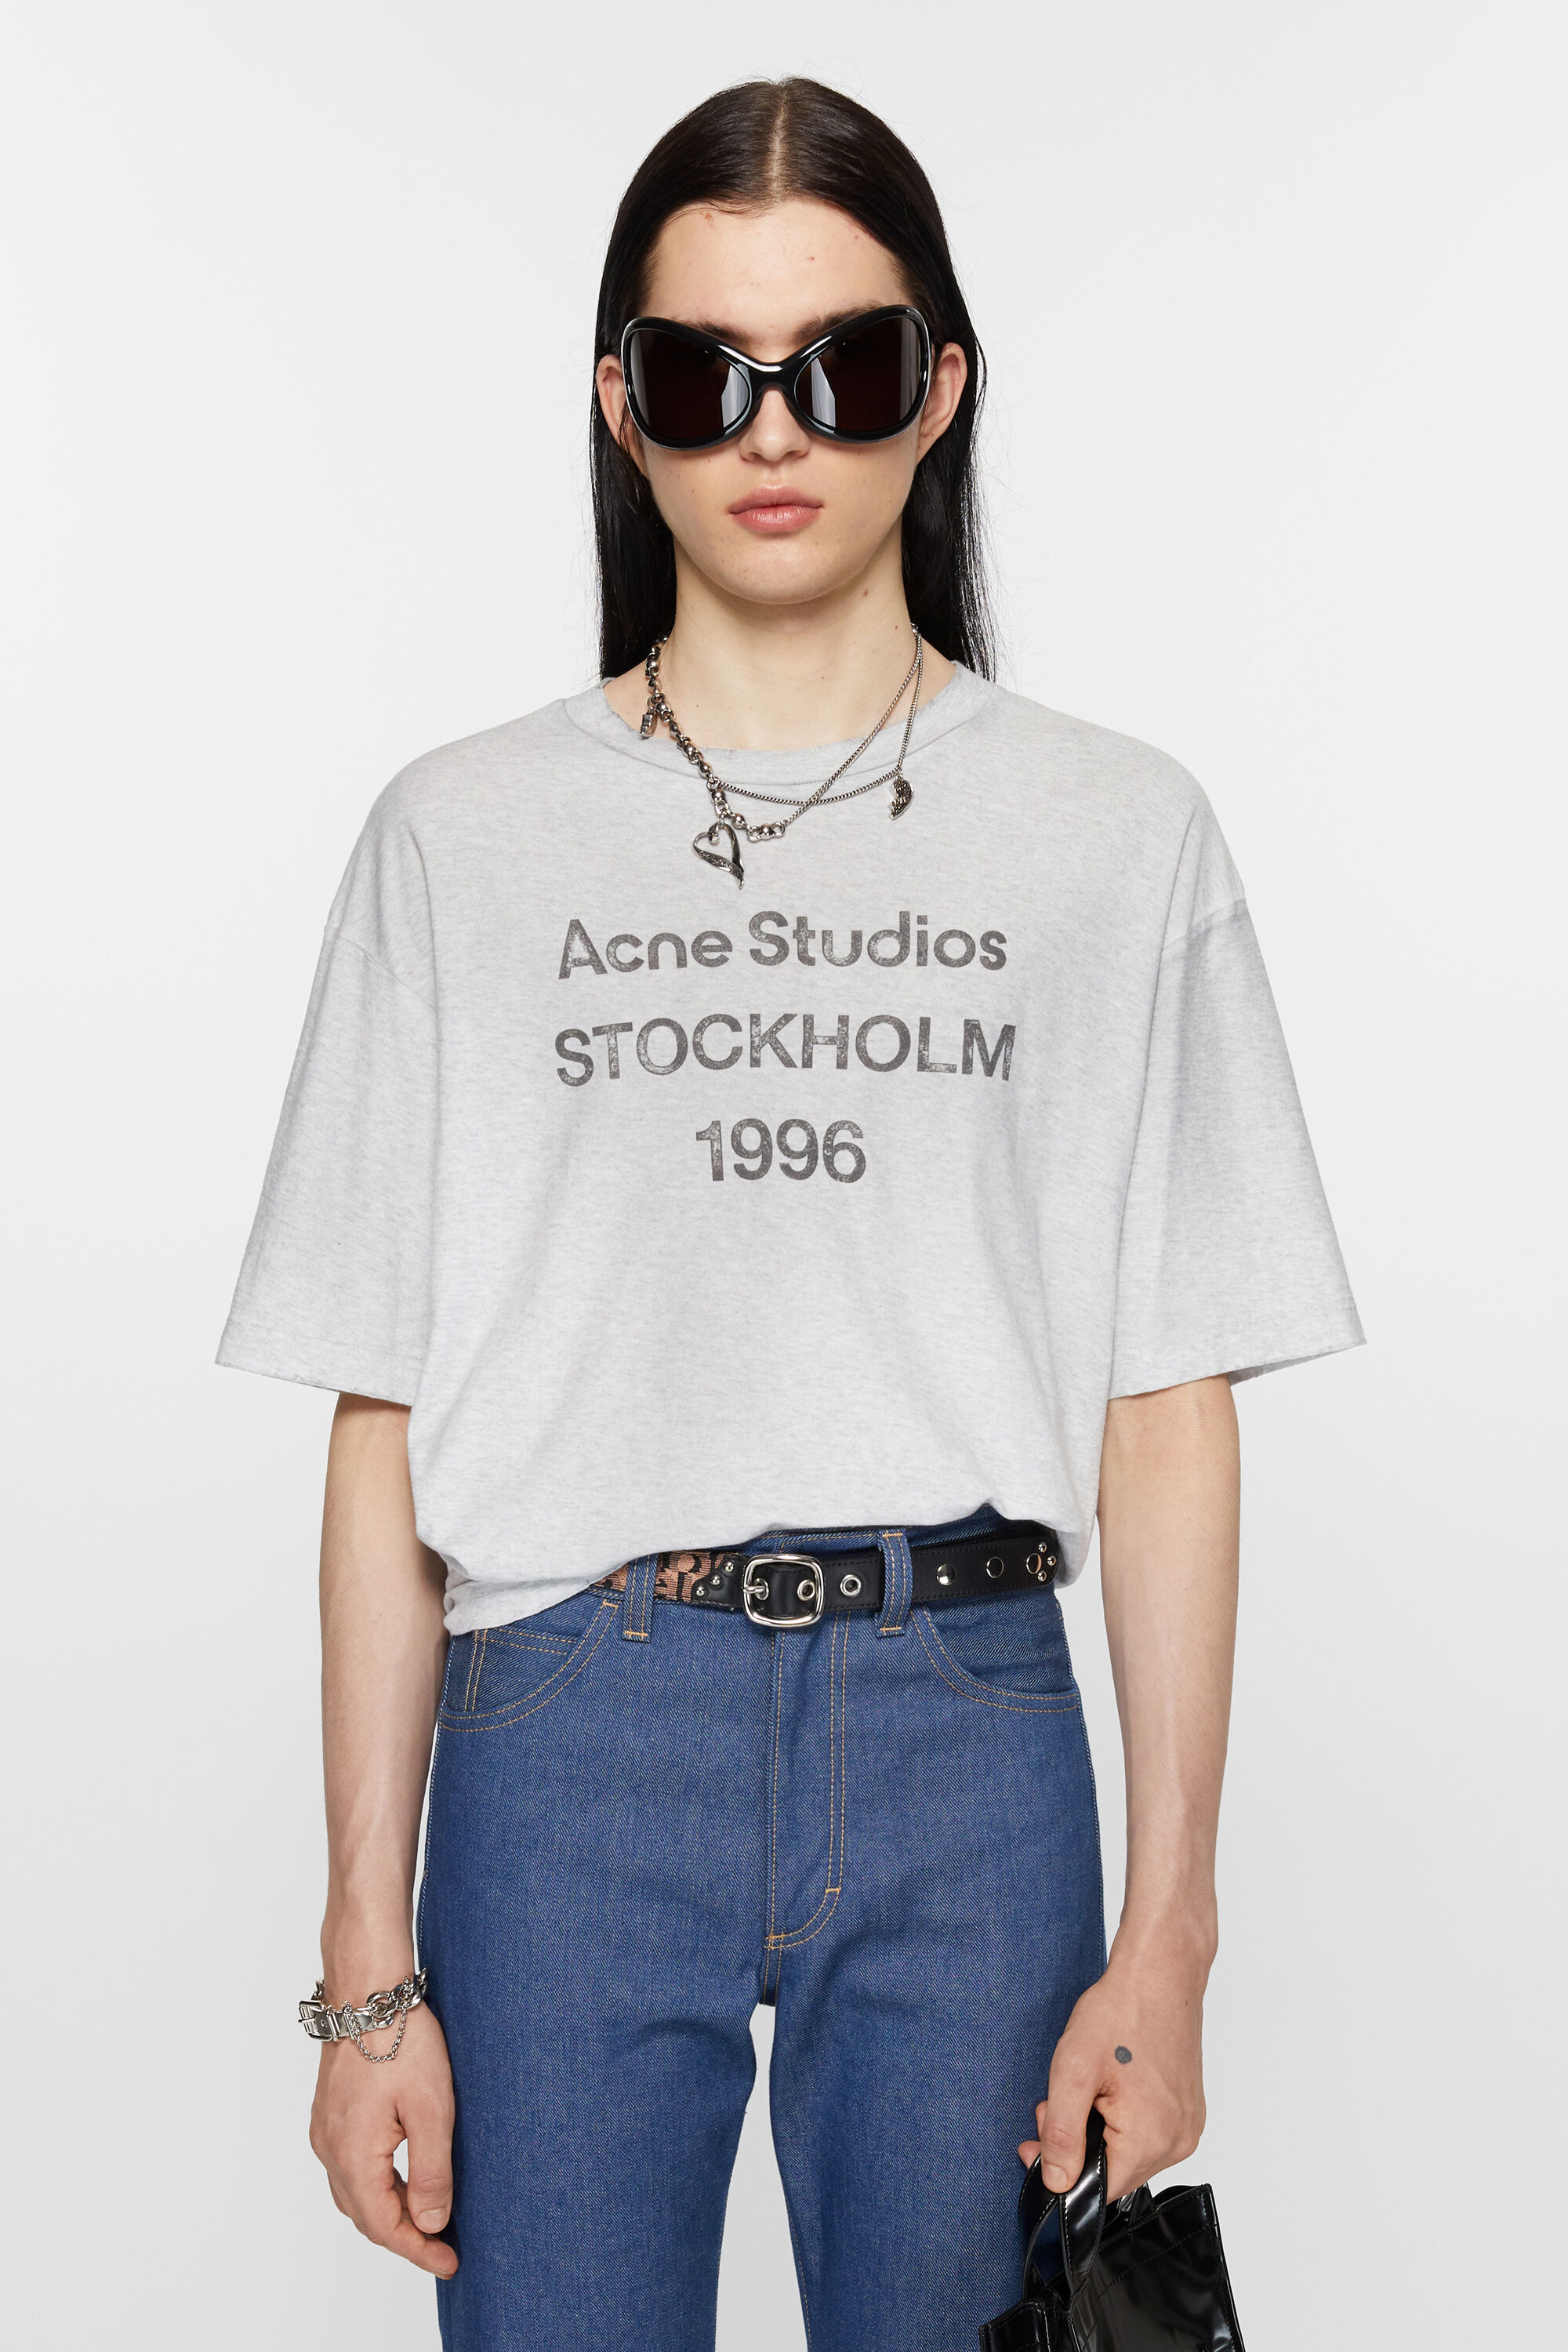 Acne Studios 1996 Tシャツグレー オーバーサイズグレー